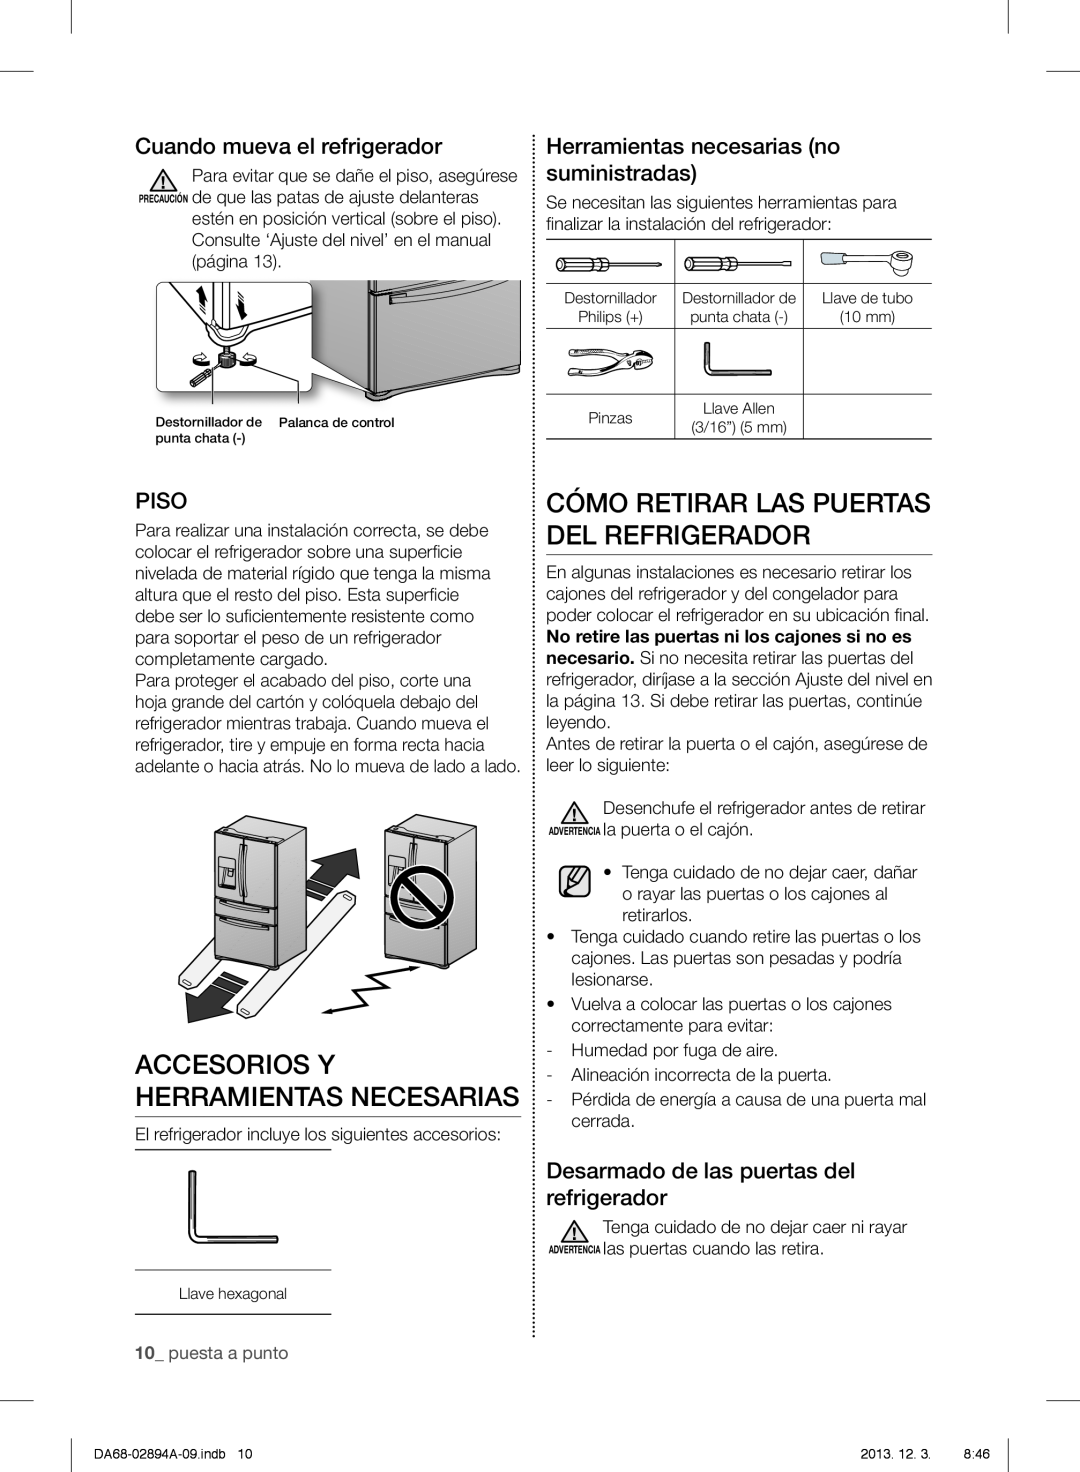 Samsung RF31FMEDBBC Cómo Retirar Las Puertas Del Refrigerador, Accesorios Y Herramientas Necesarias, Piso, puesta a punto 